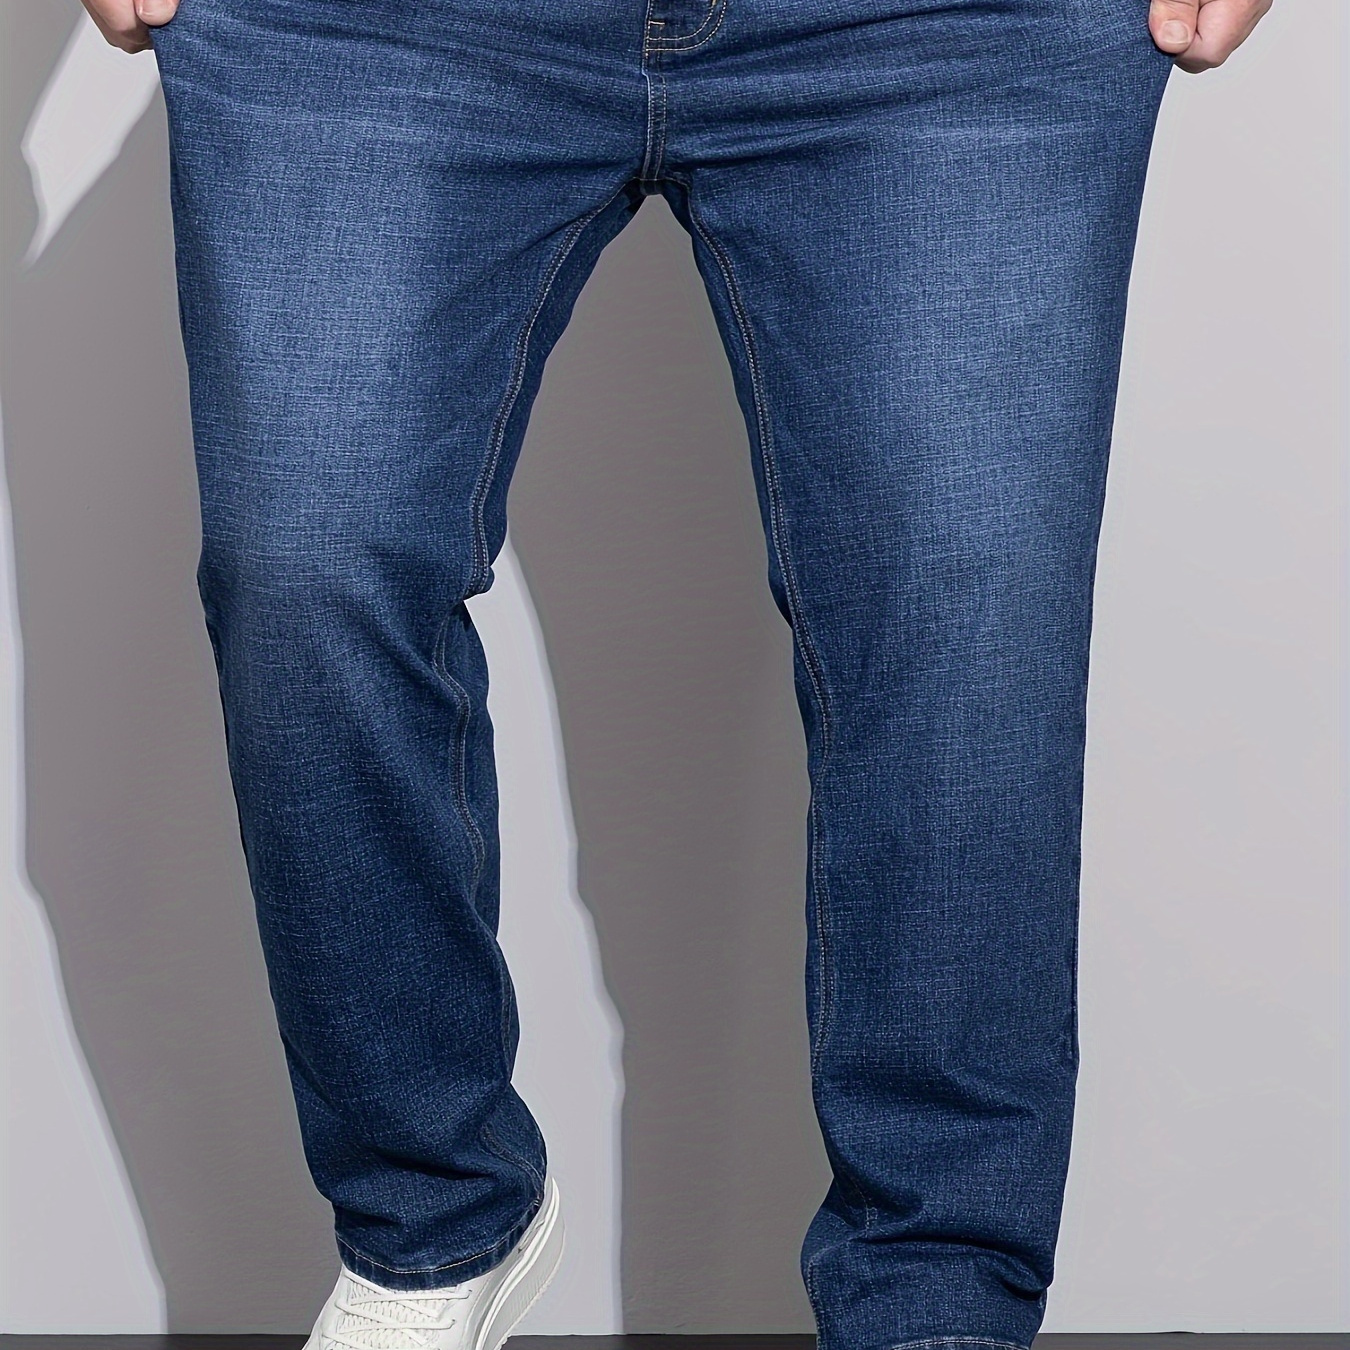 

Men's Plus Size Cotton Denim Jeans, Breathable Comfortable Pants For All Seasons, Regular Fit